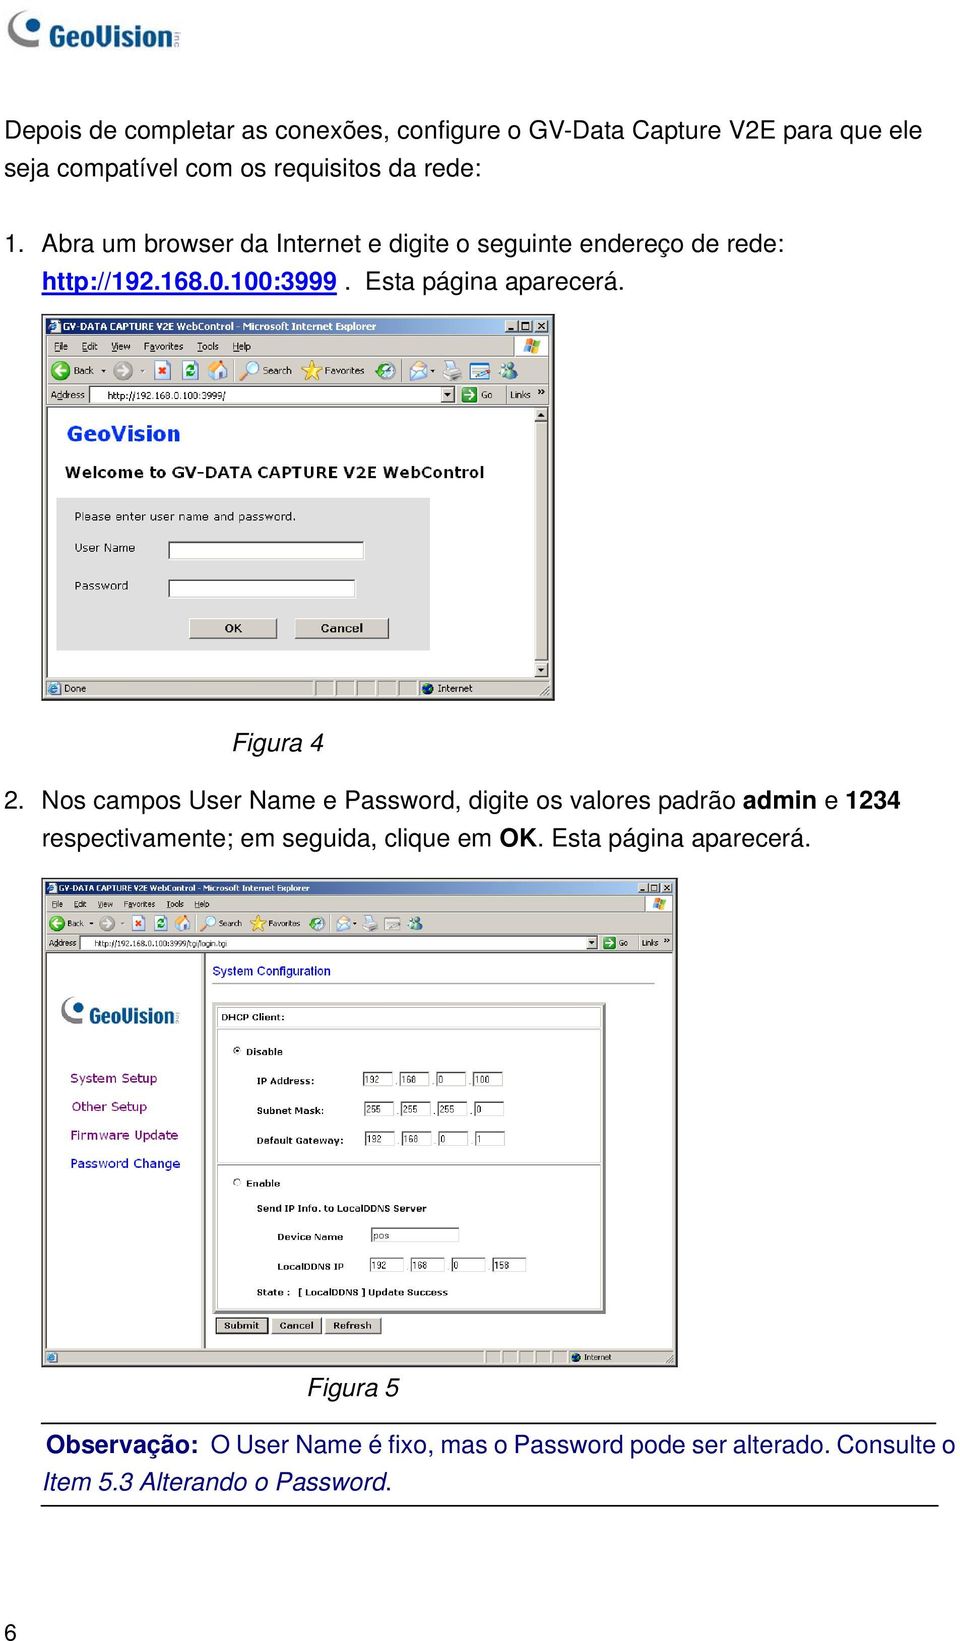 Nos campos User Name e Password, digite os valores padrão admin e 1234 respectivamente; em seguida, clique em OK.